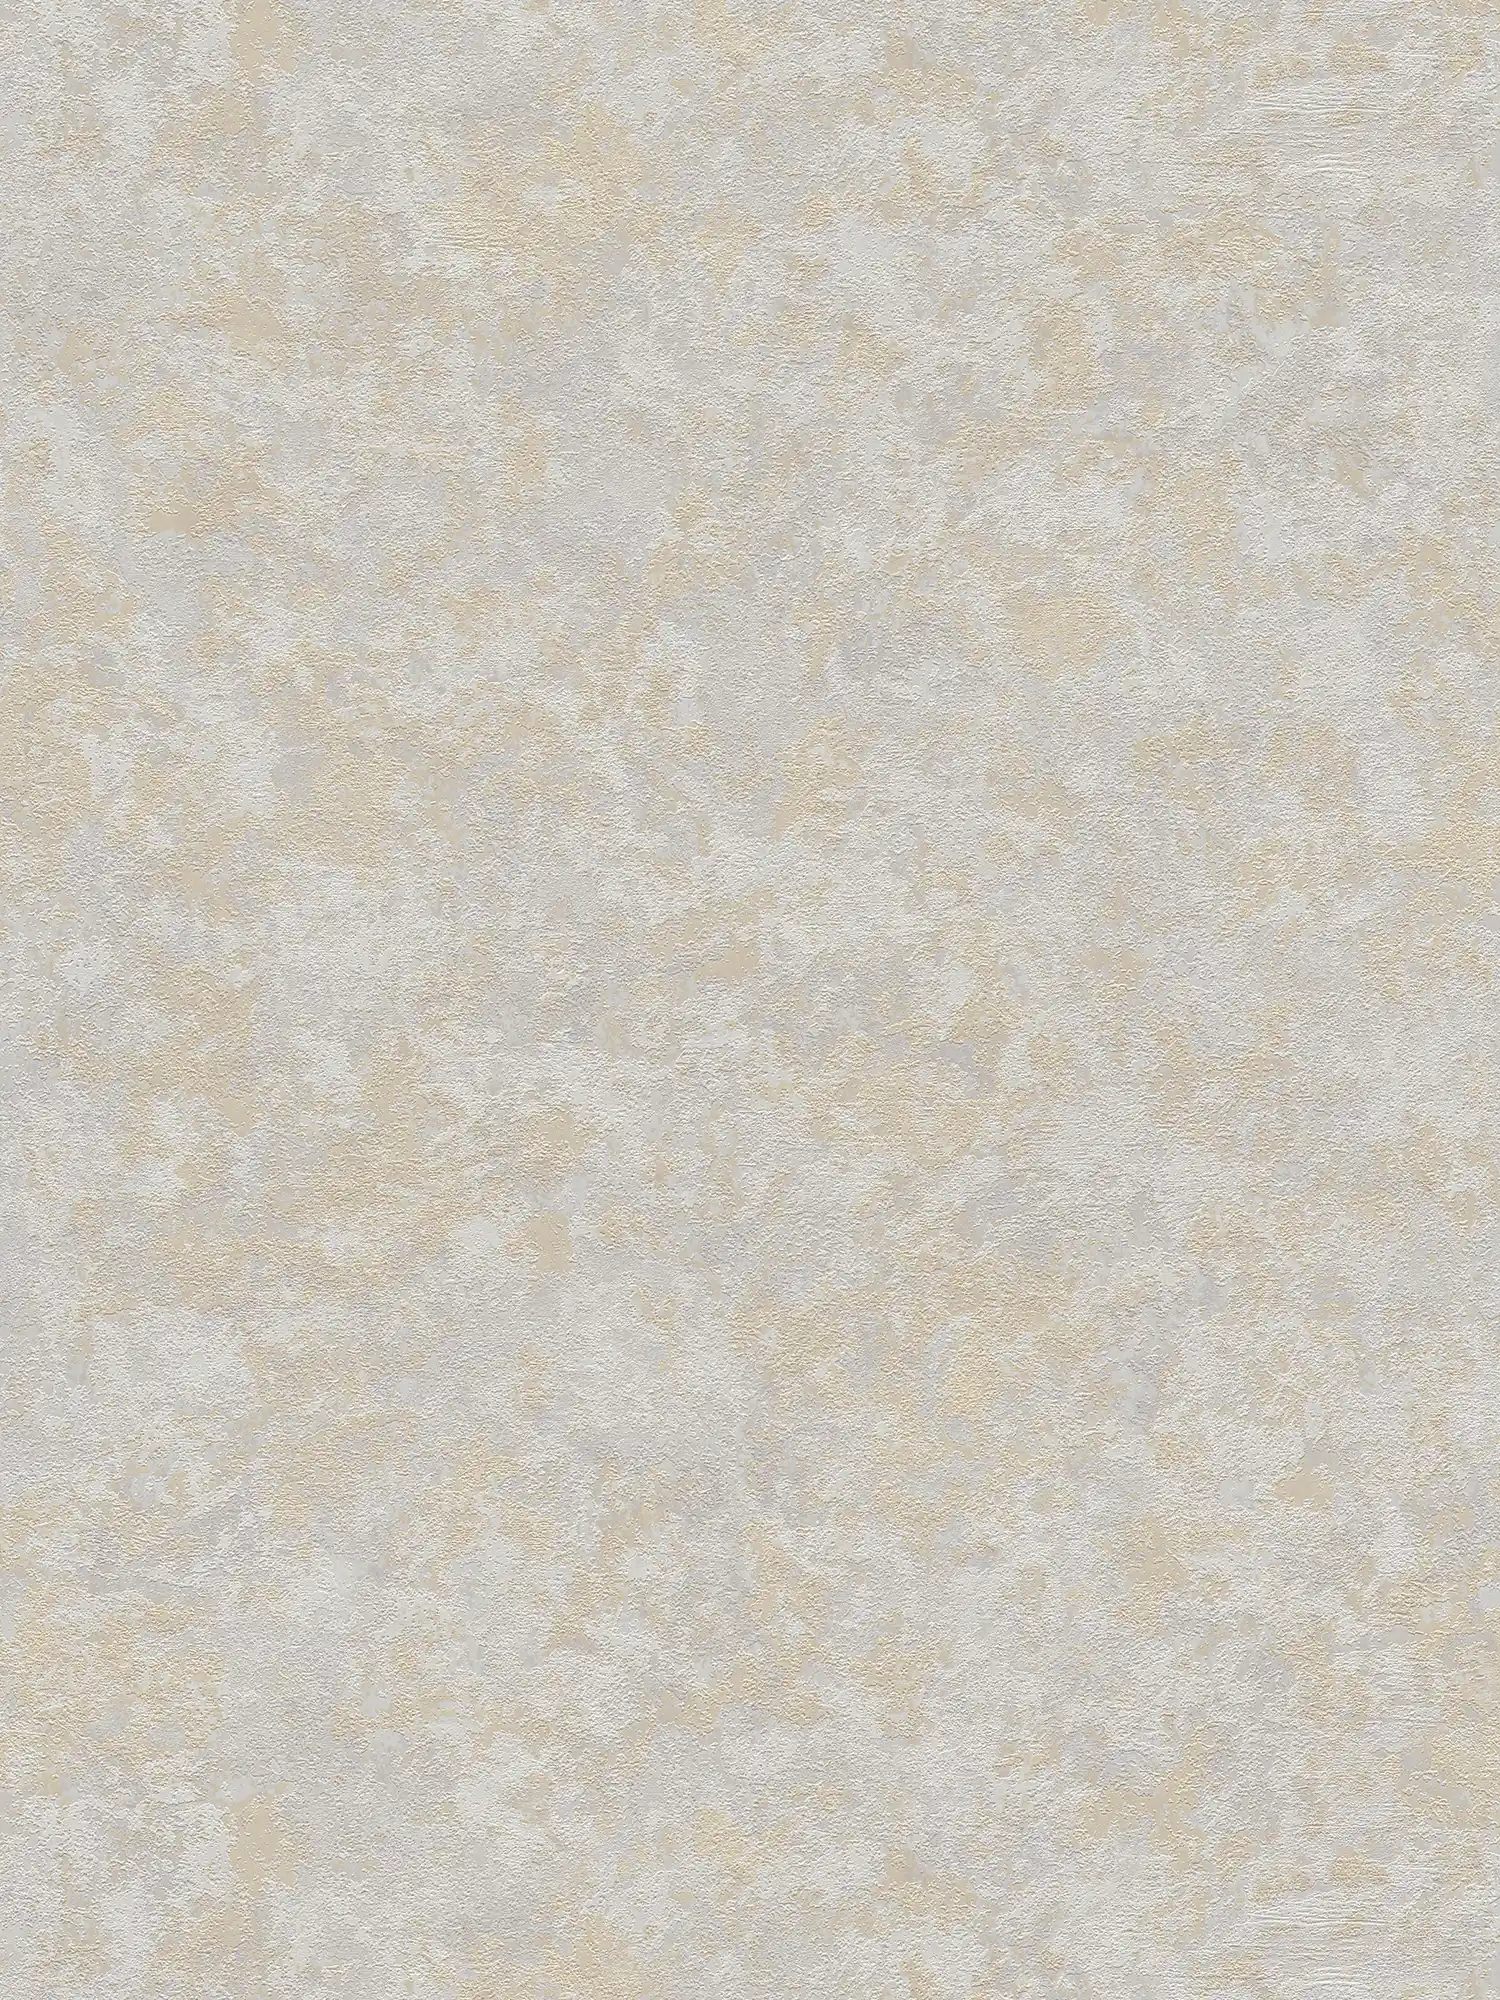 Papier peint uni chiné avec motifs structurés - beige, gris
